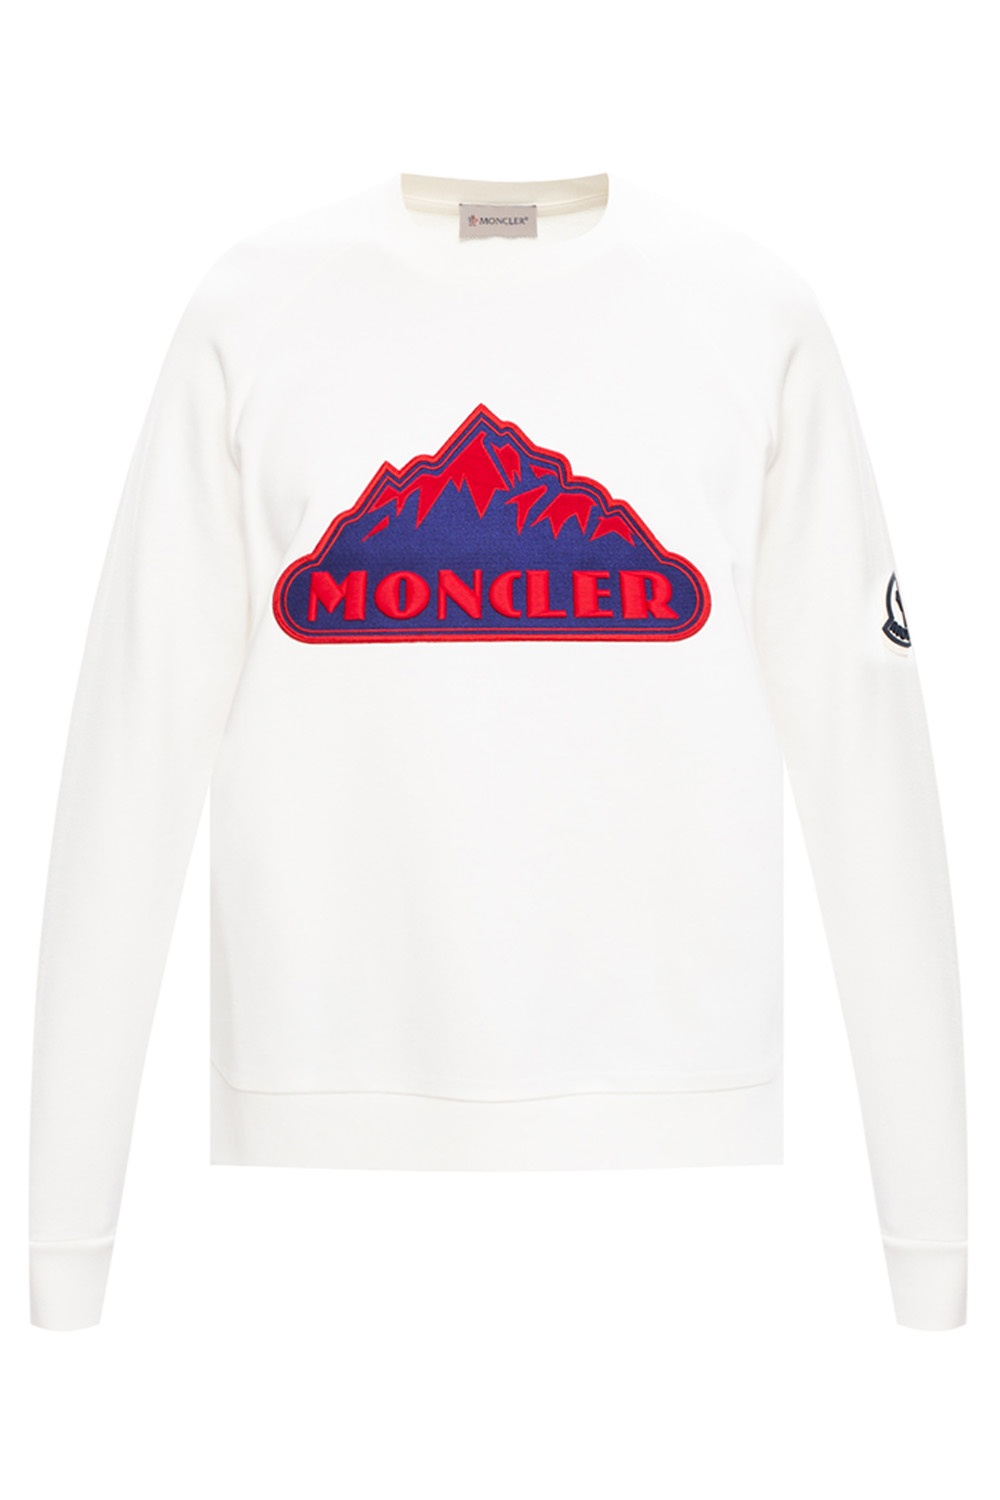 moncler sweatshirt logo